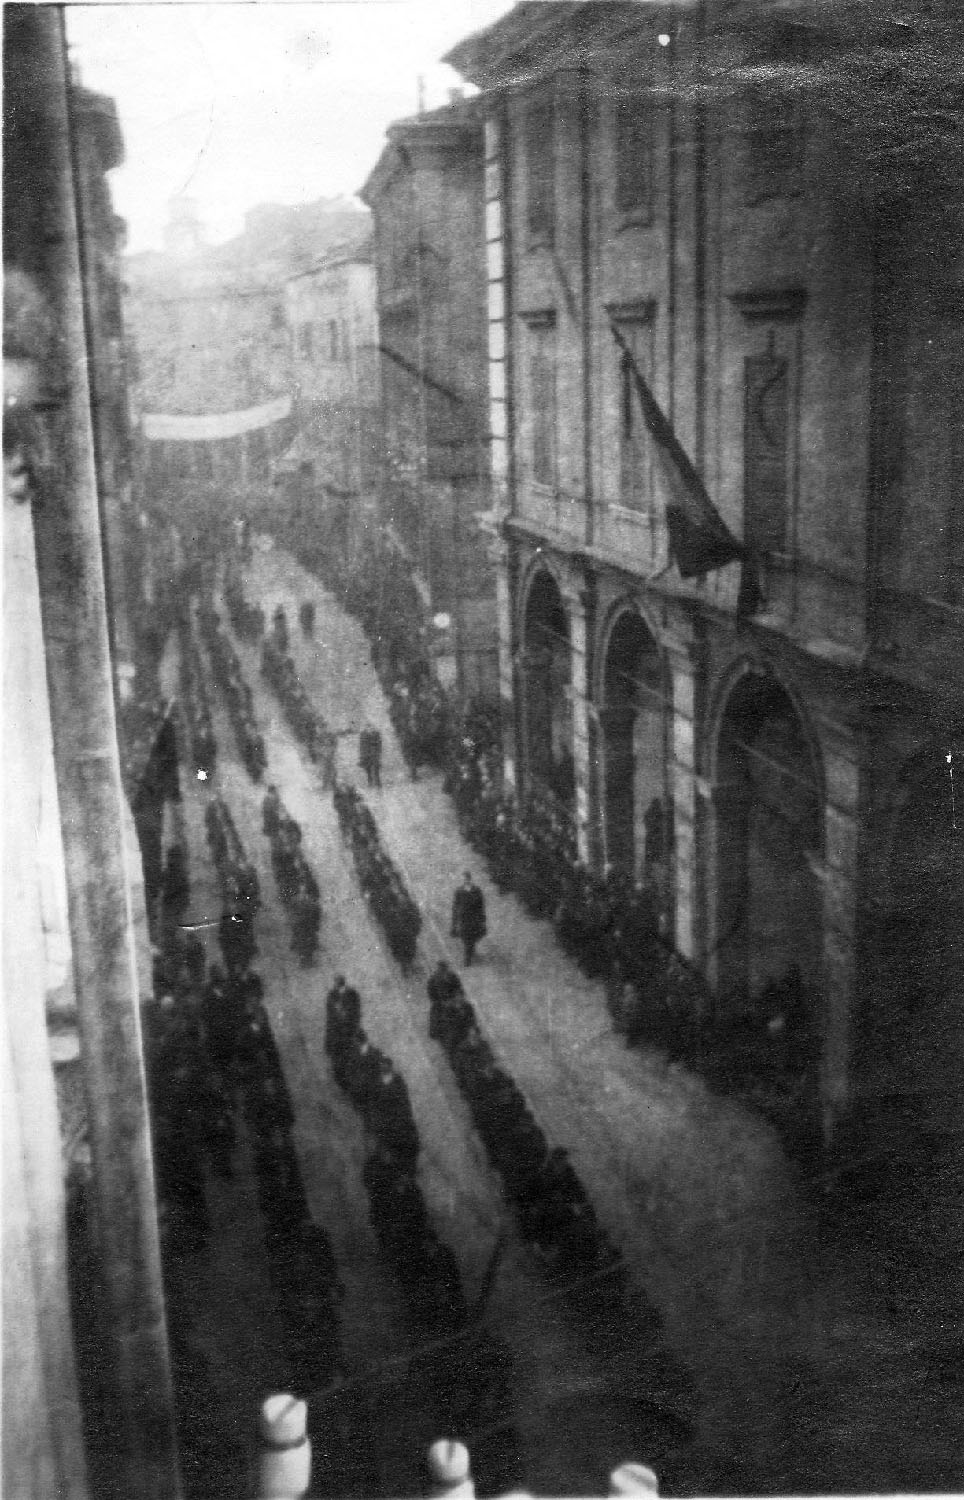 Le esequie dello squadrista Mario Ruini, ucciso dagli anarchici il 21 gennaio 1921. Istituto Storico Modena